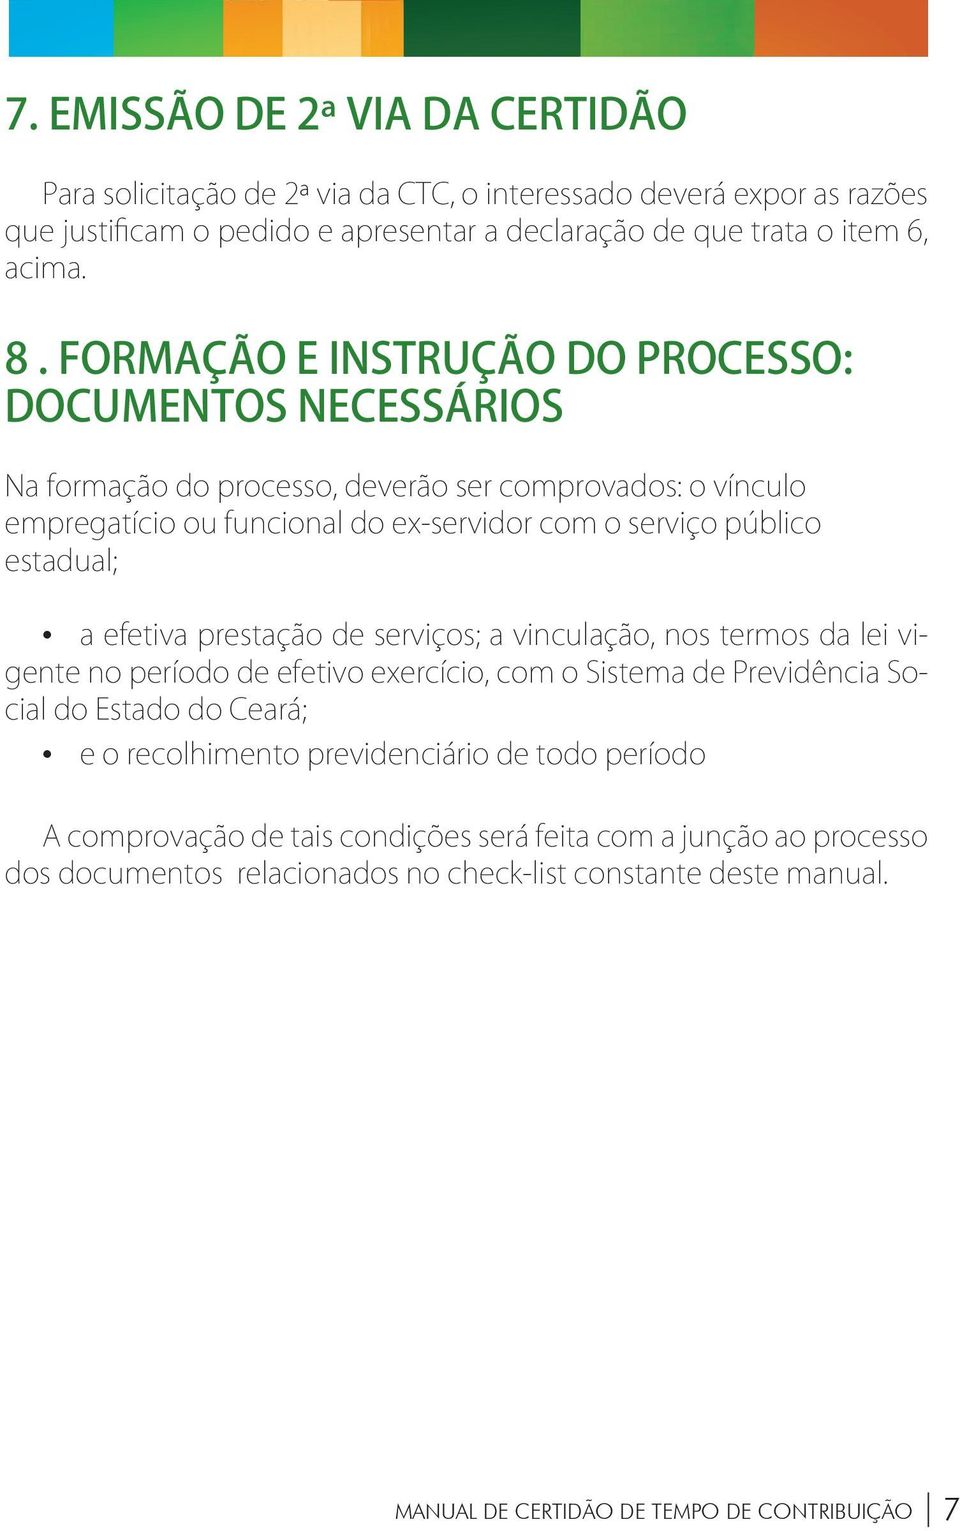 efetiva prestação de serviços; a vinculação, nos termos da lei vigente no período de efetivo exercício, com o Sistema de Previdência Social do Estado do Ceará; e o recolhimento previdenciário